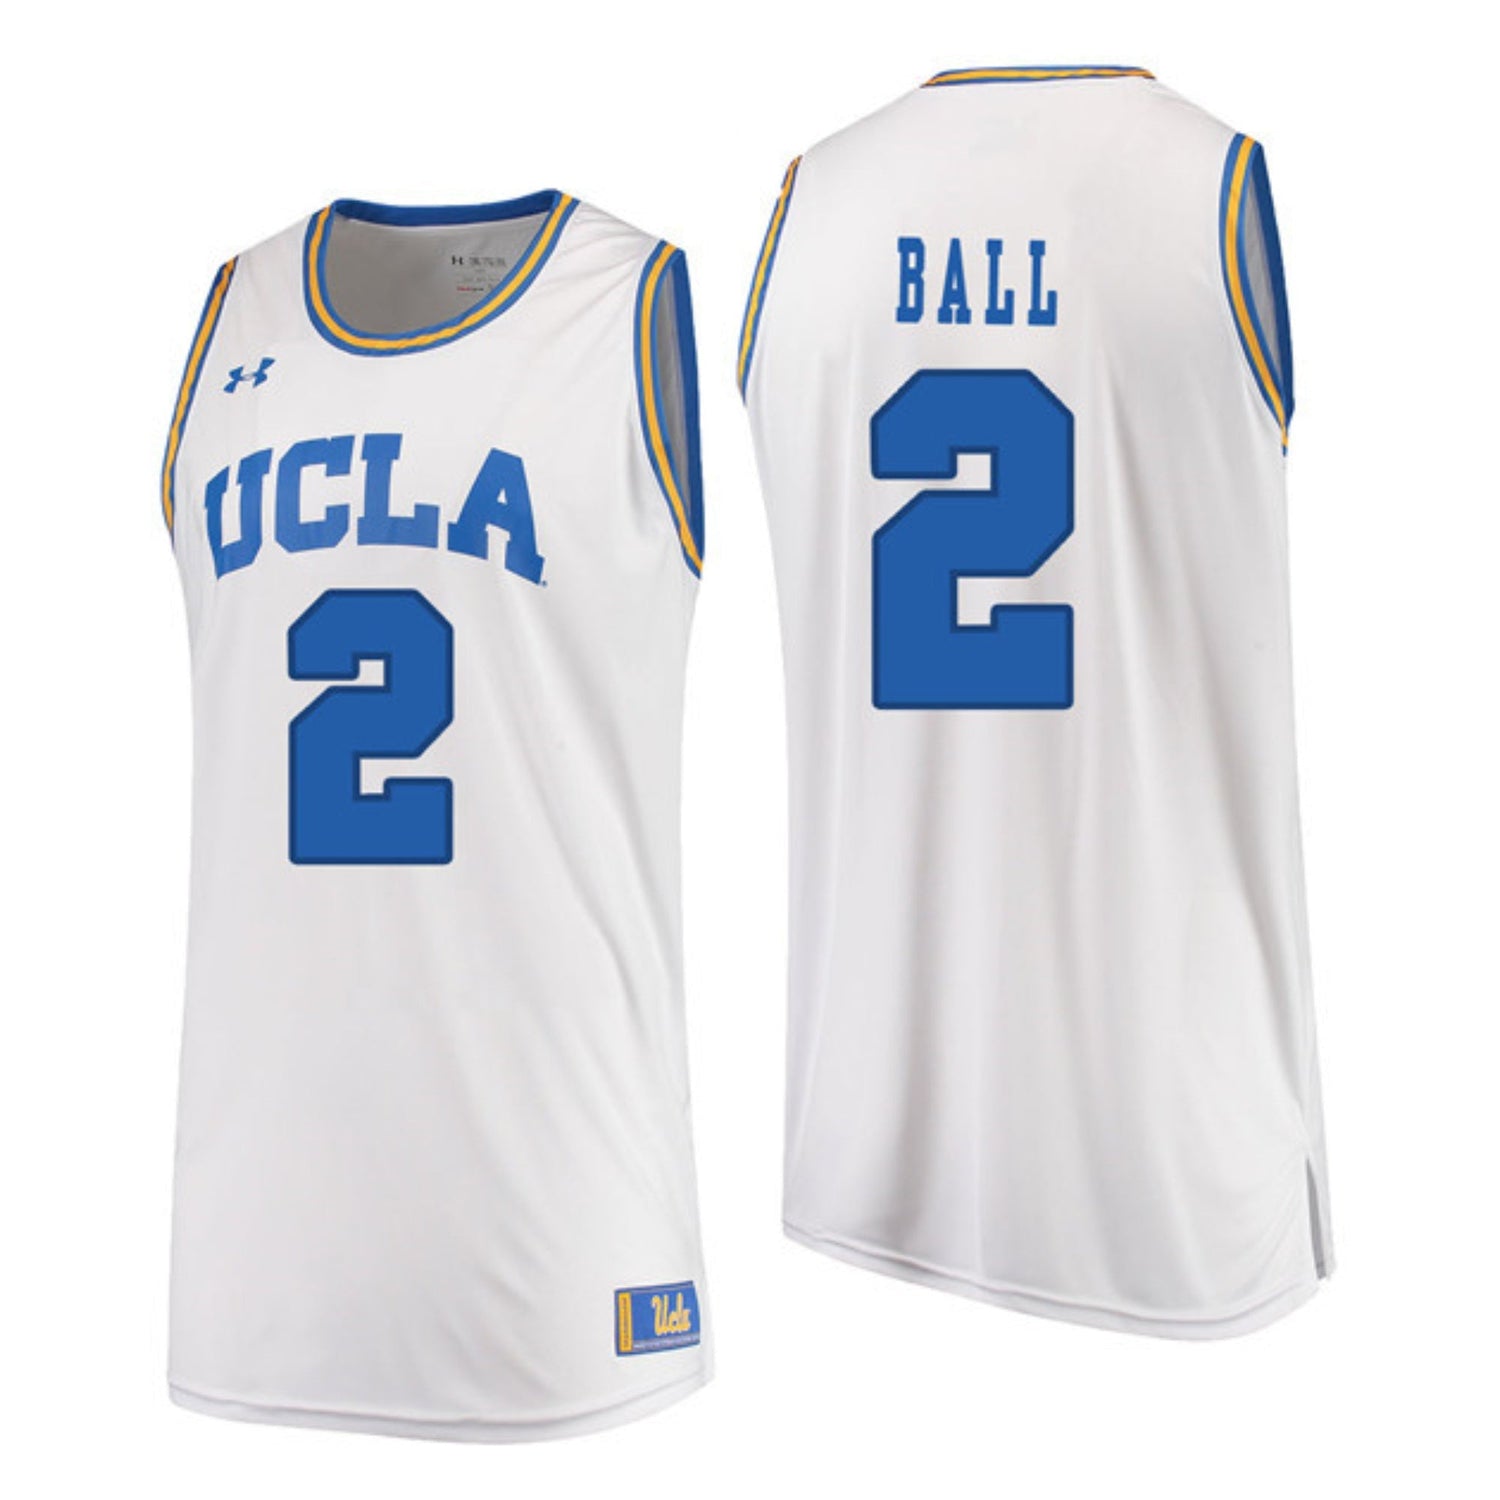 UCLA Bruins #2 Lonzo Ball Adidas Basketball Jersey 2150